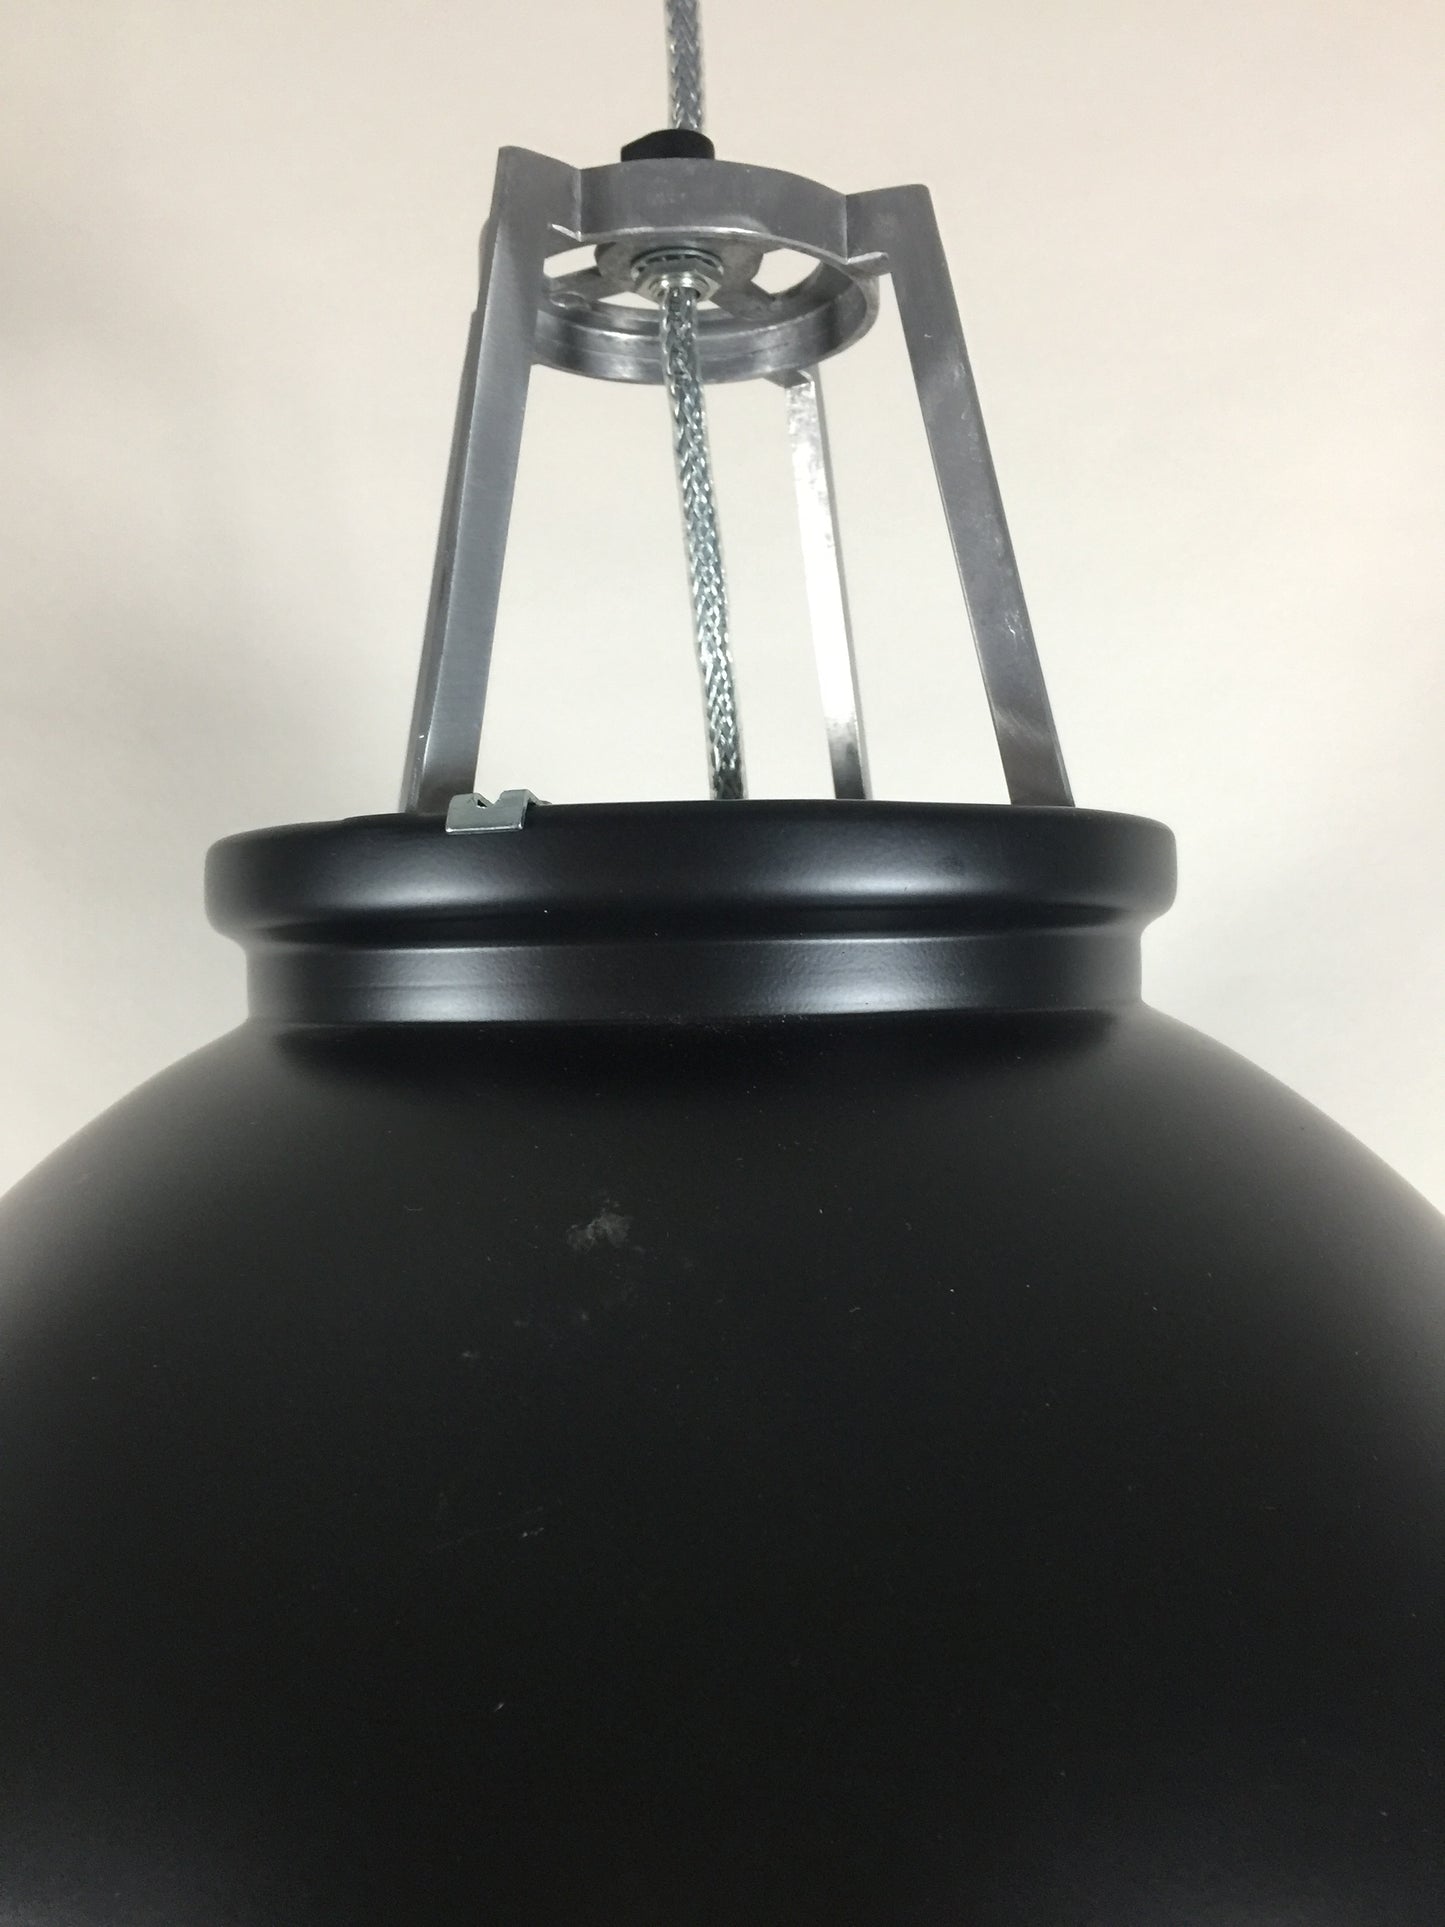 Original BTC lampa - Titan stor modell med sandblästrat glas